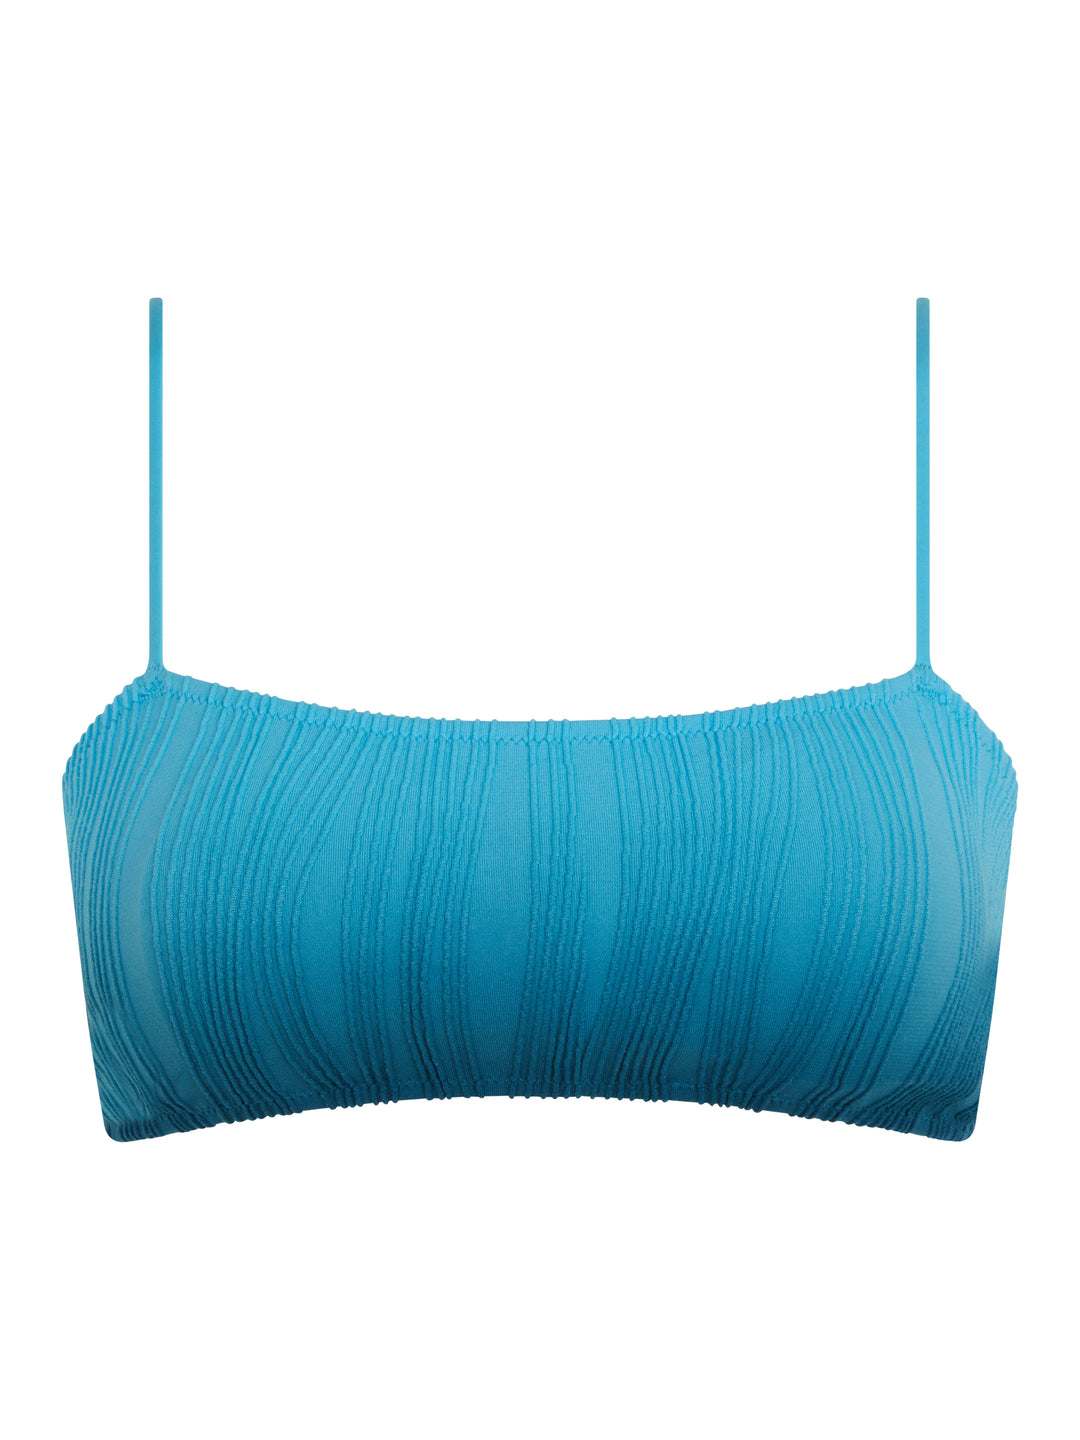 Costumi da bagno Chantelle - Swim Taglia unica T-shirt senza ferretto Reggiseno blu tie & dye